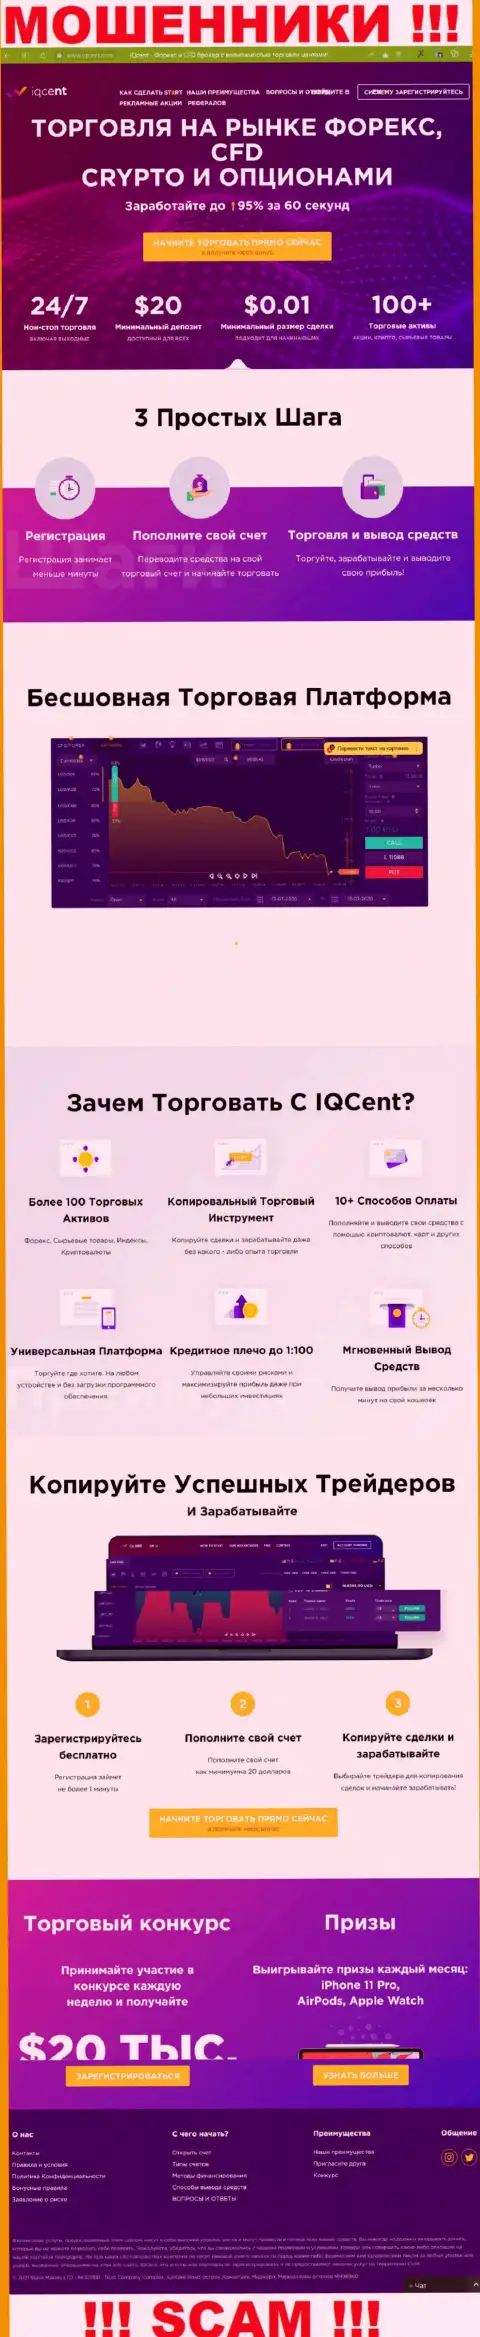 Официальный web-портал мошенников IQCent Com, переполненный информацией для доверчивых людей